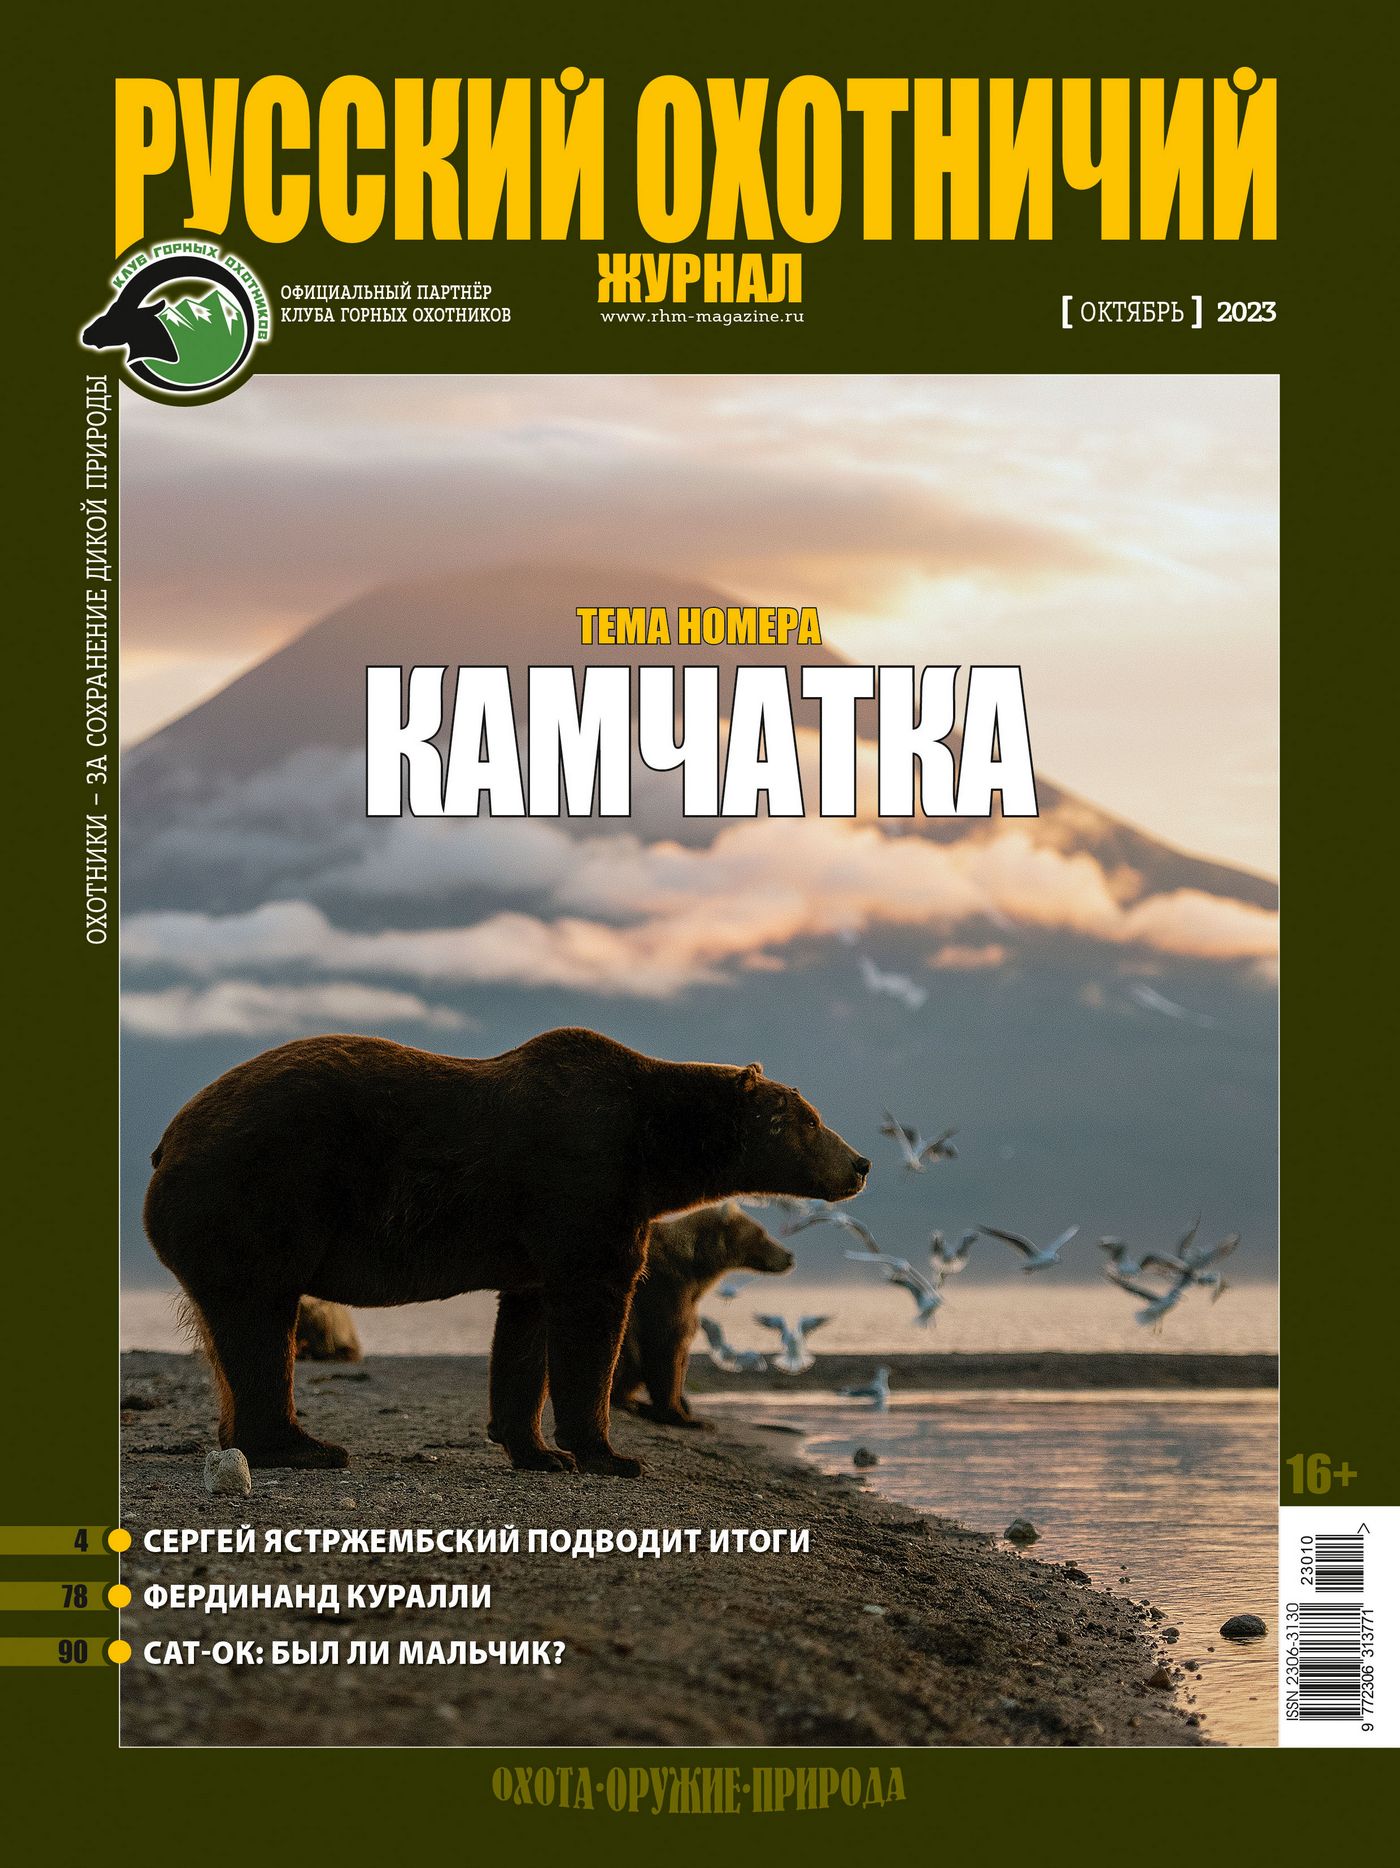 Камчатка. «Русский охотничий журнал», №10 октябрь 2023